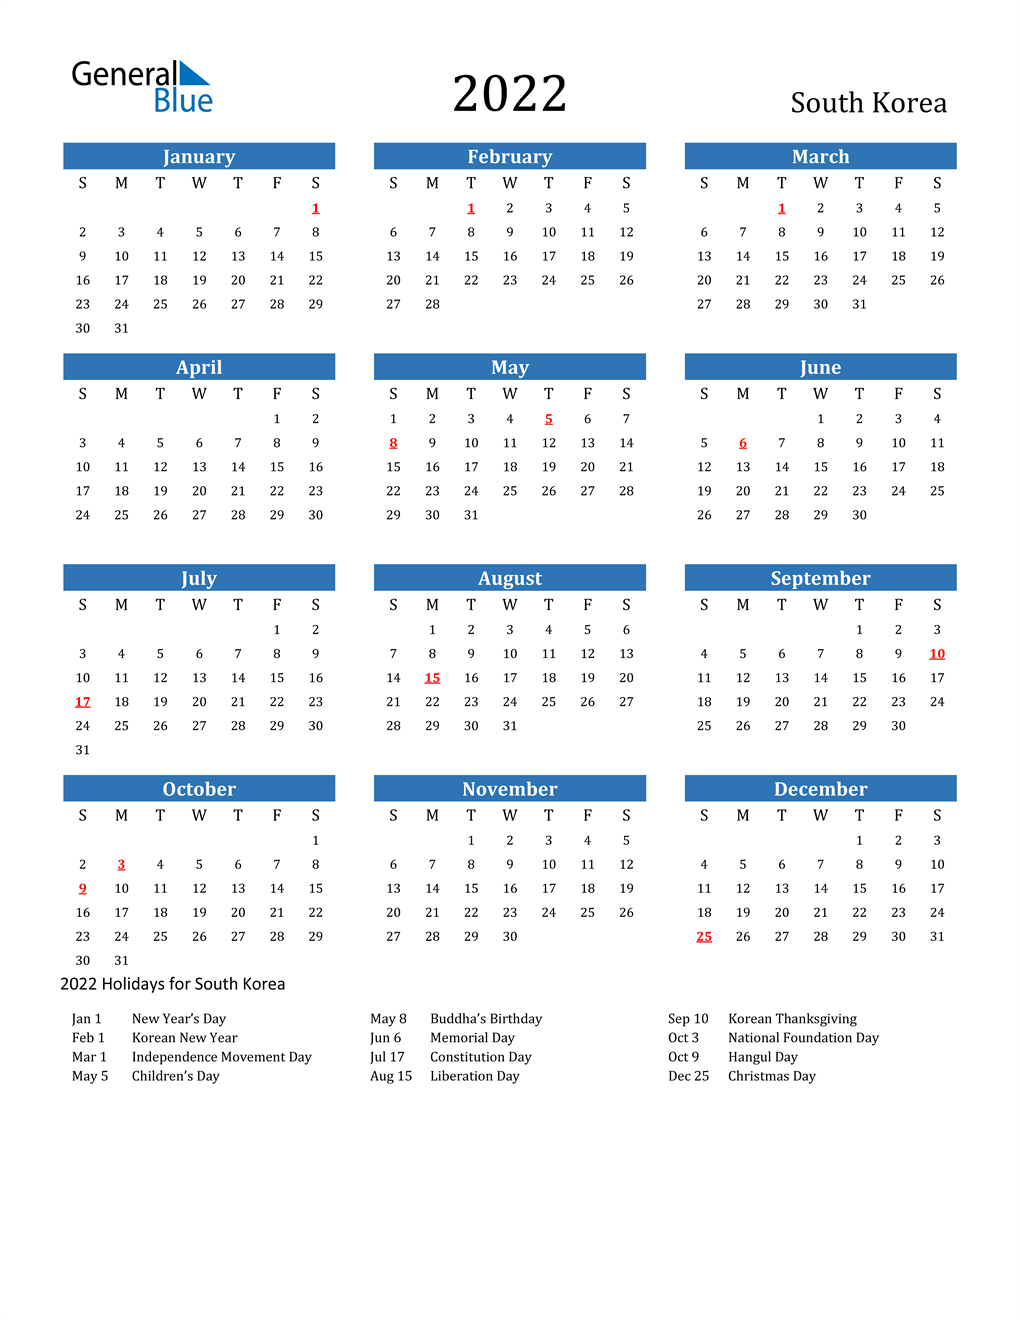 Korean Calendar 2022 2022 South Korea Calendar With Holidays